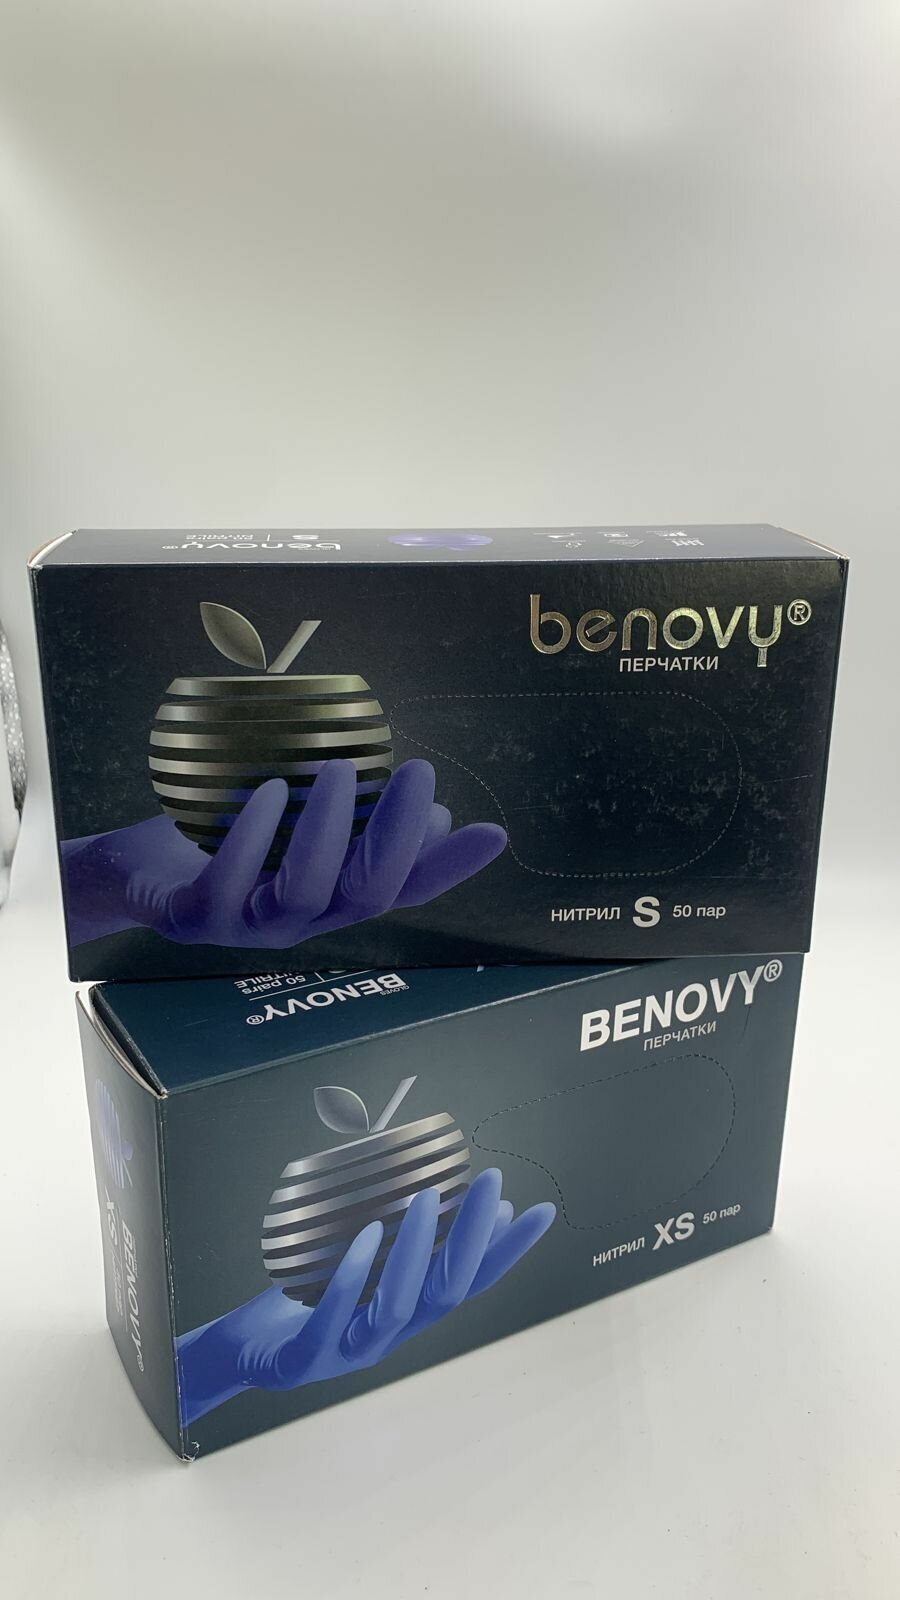 Перчатки BENOVY NITRILE MULTICOLOR 50 пар нитриловые текстурированные на пальцах размер XS